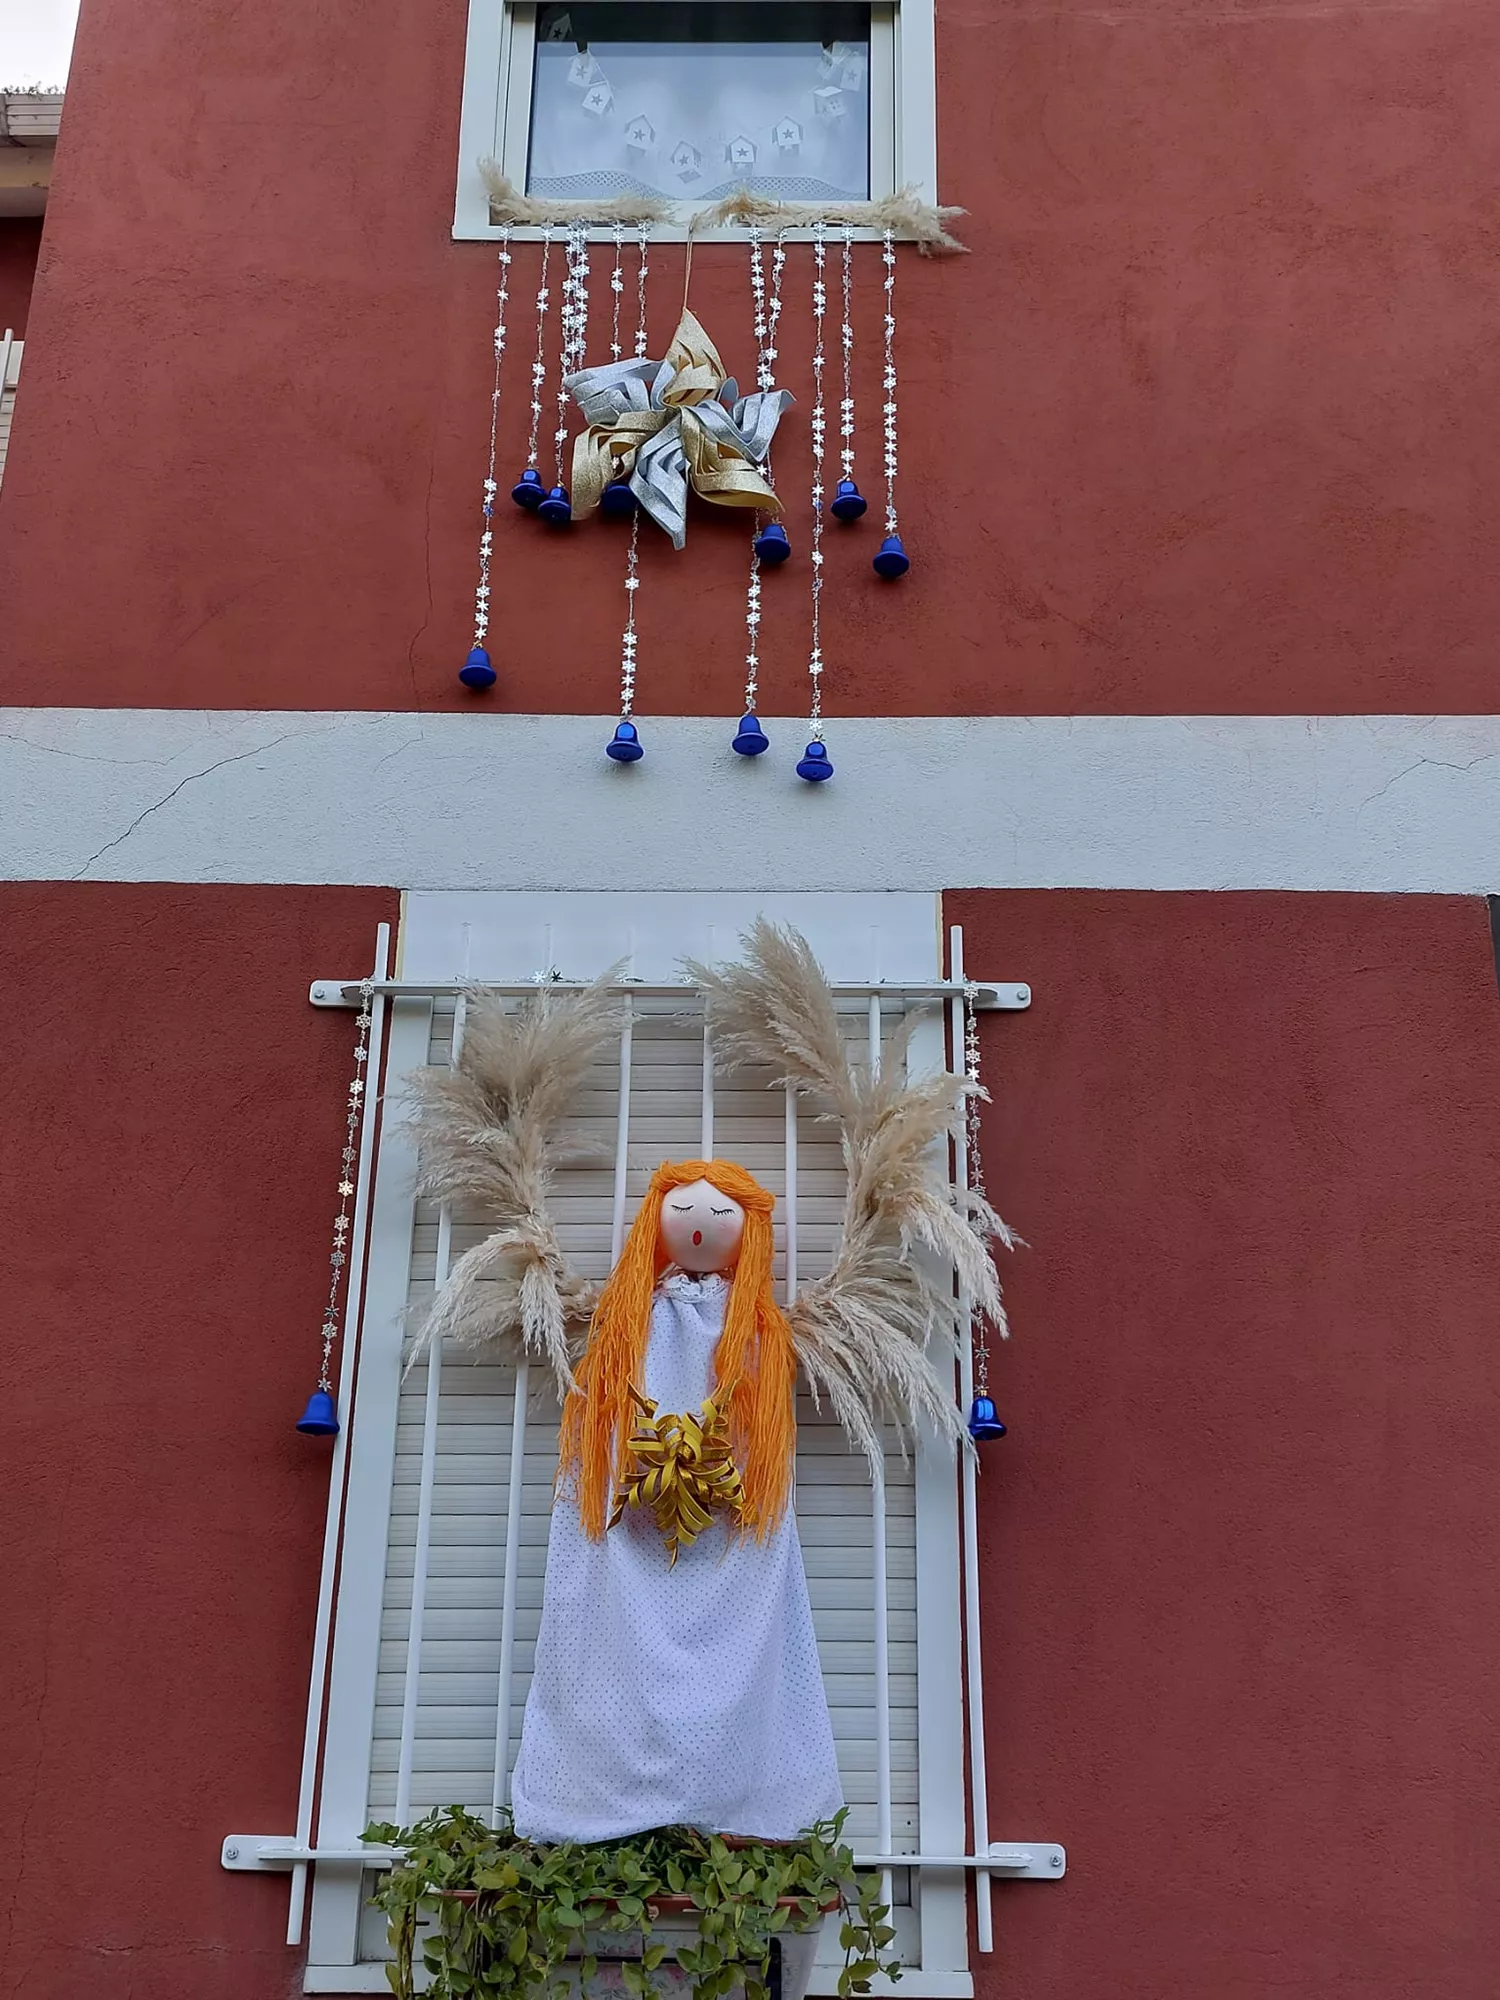 La lucha de la pequeña Encina contra el cáncer reflejada en una fachada navideña de ángeles de la guarda en Ponferrada